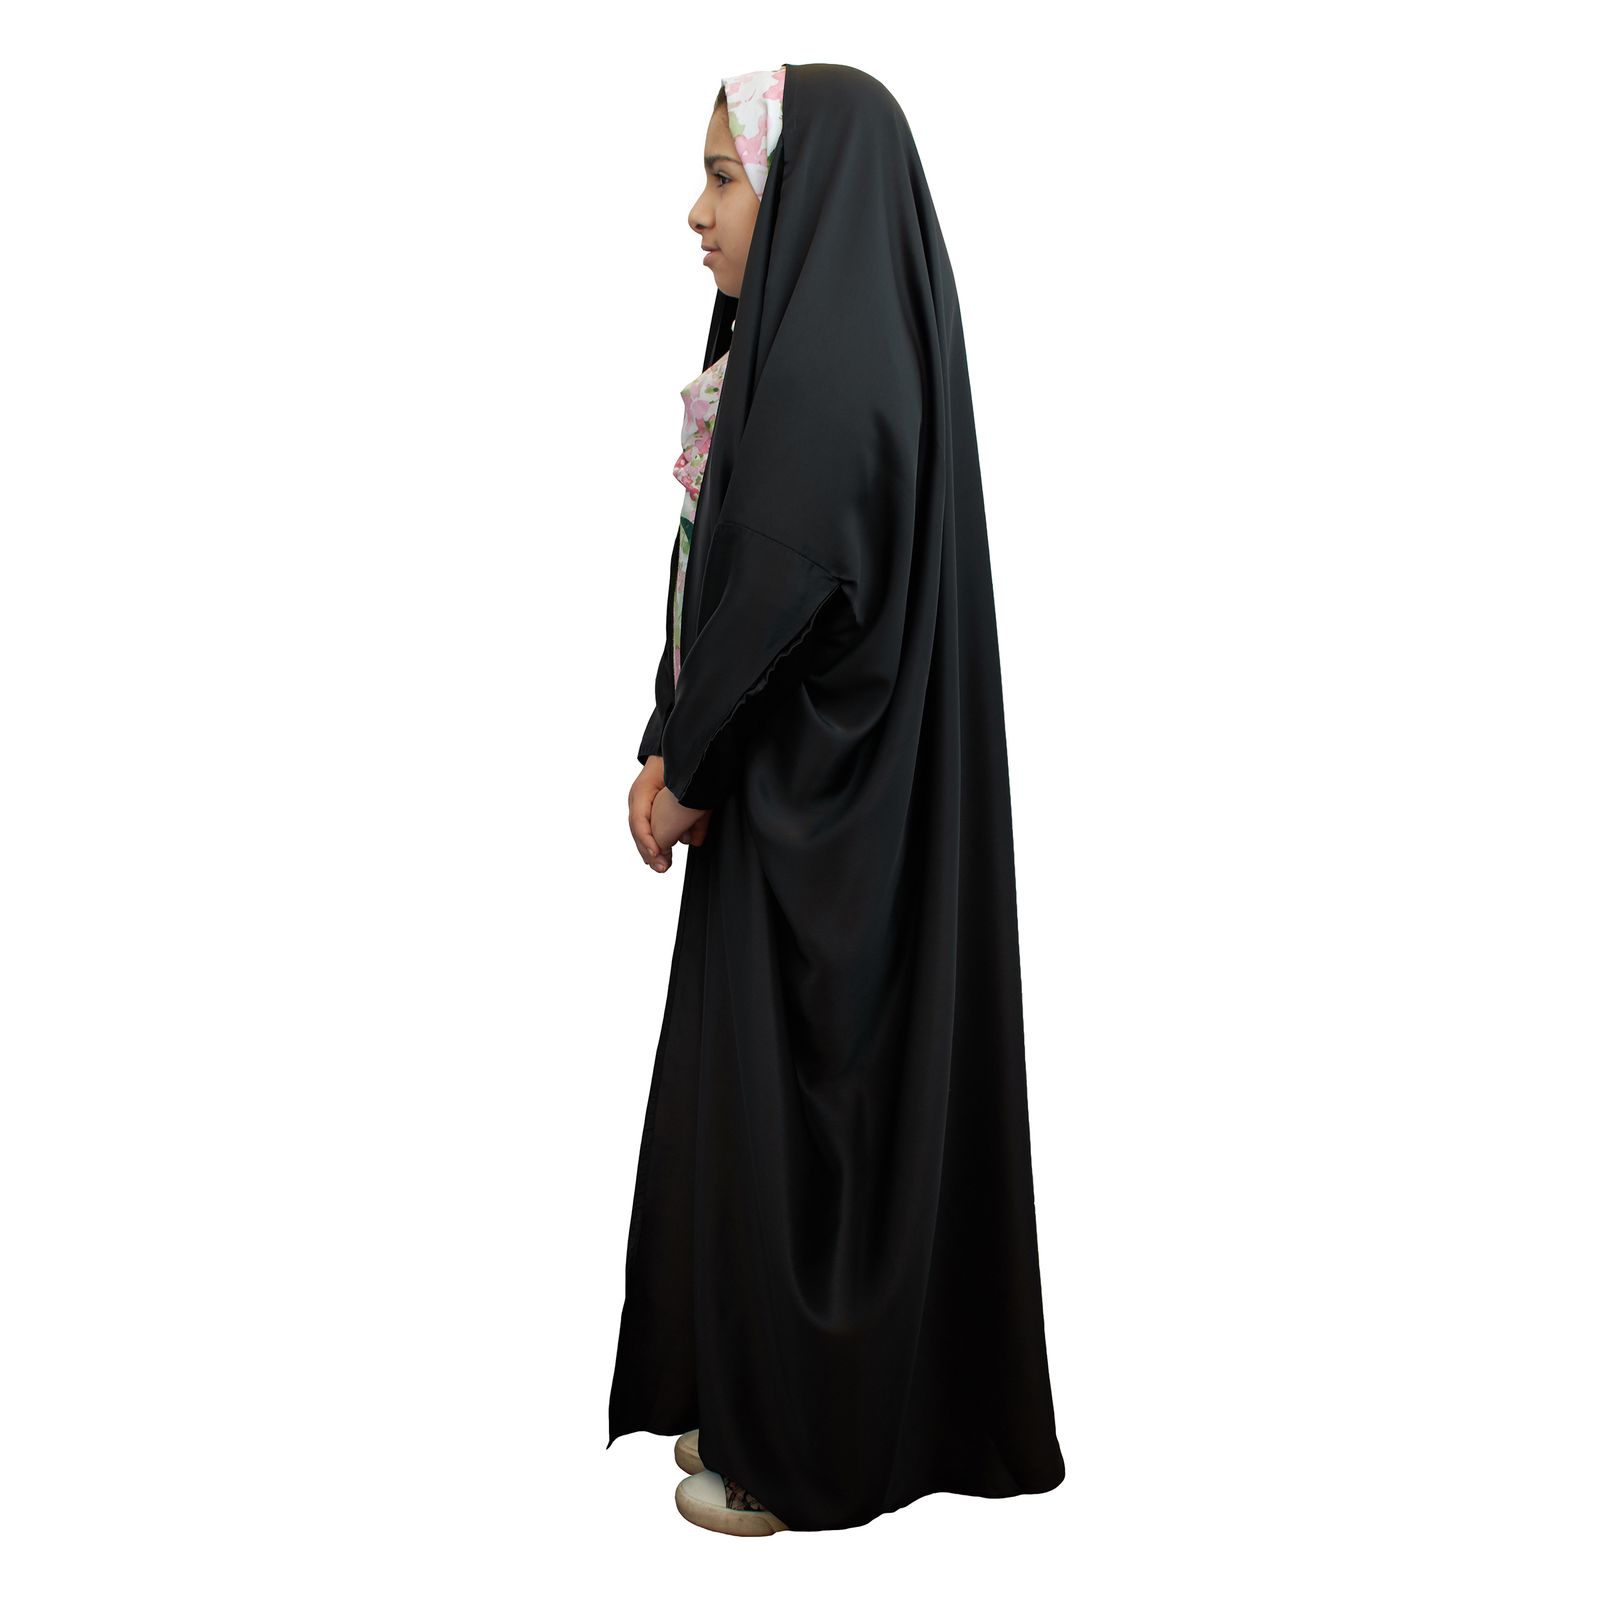 چادر عربی دخترانه حجاب فاطمی کد sat002 -  - 2